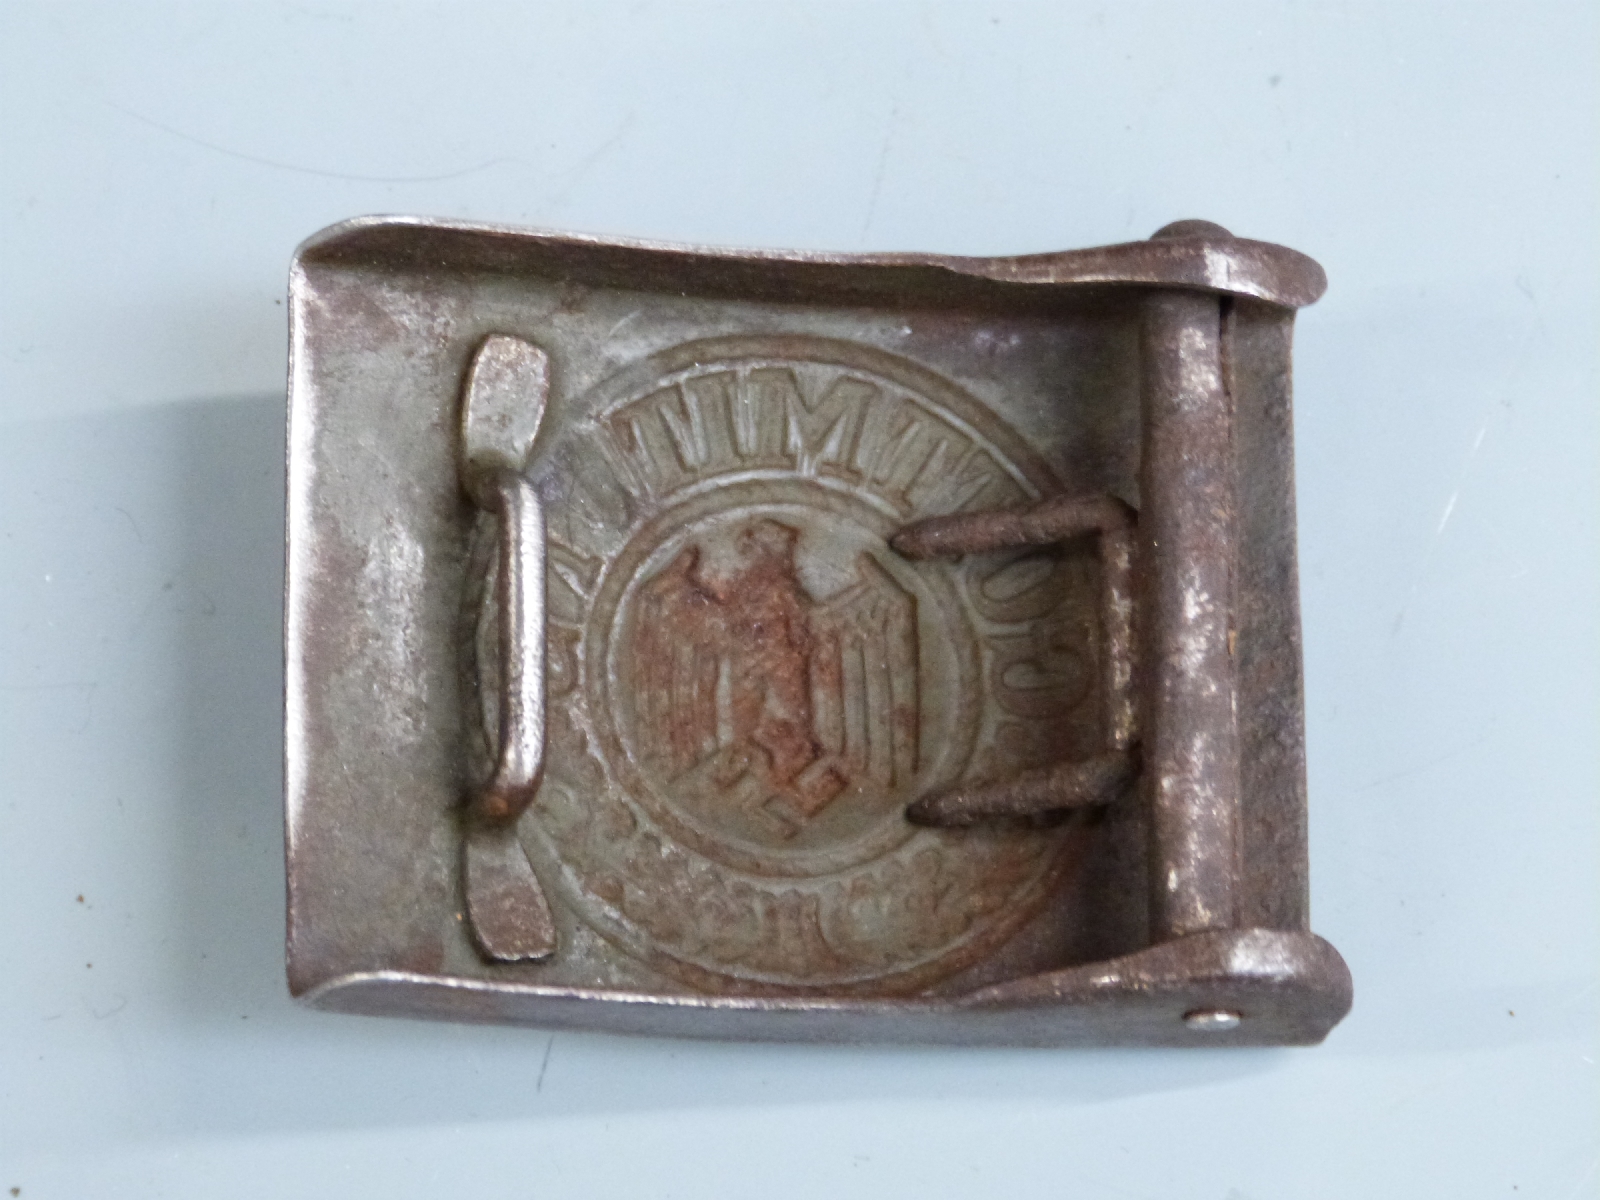 German Third Reich Nazi 'Got Mit Uns' steel belt buckle - Image 2 of 2